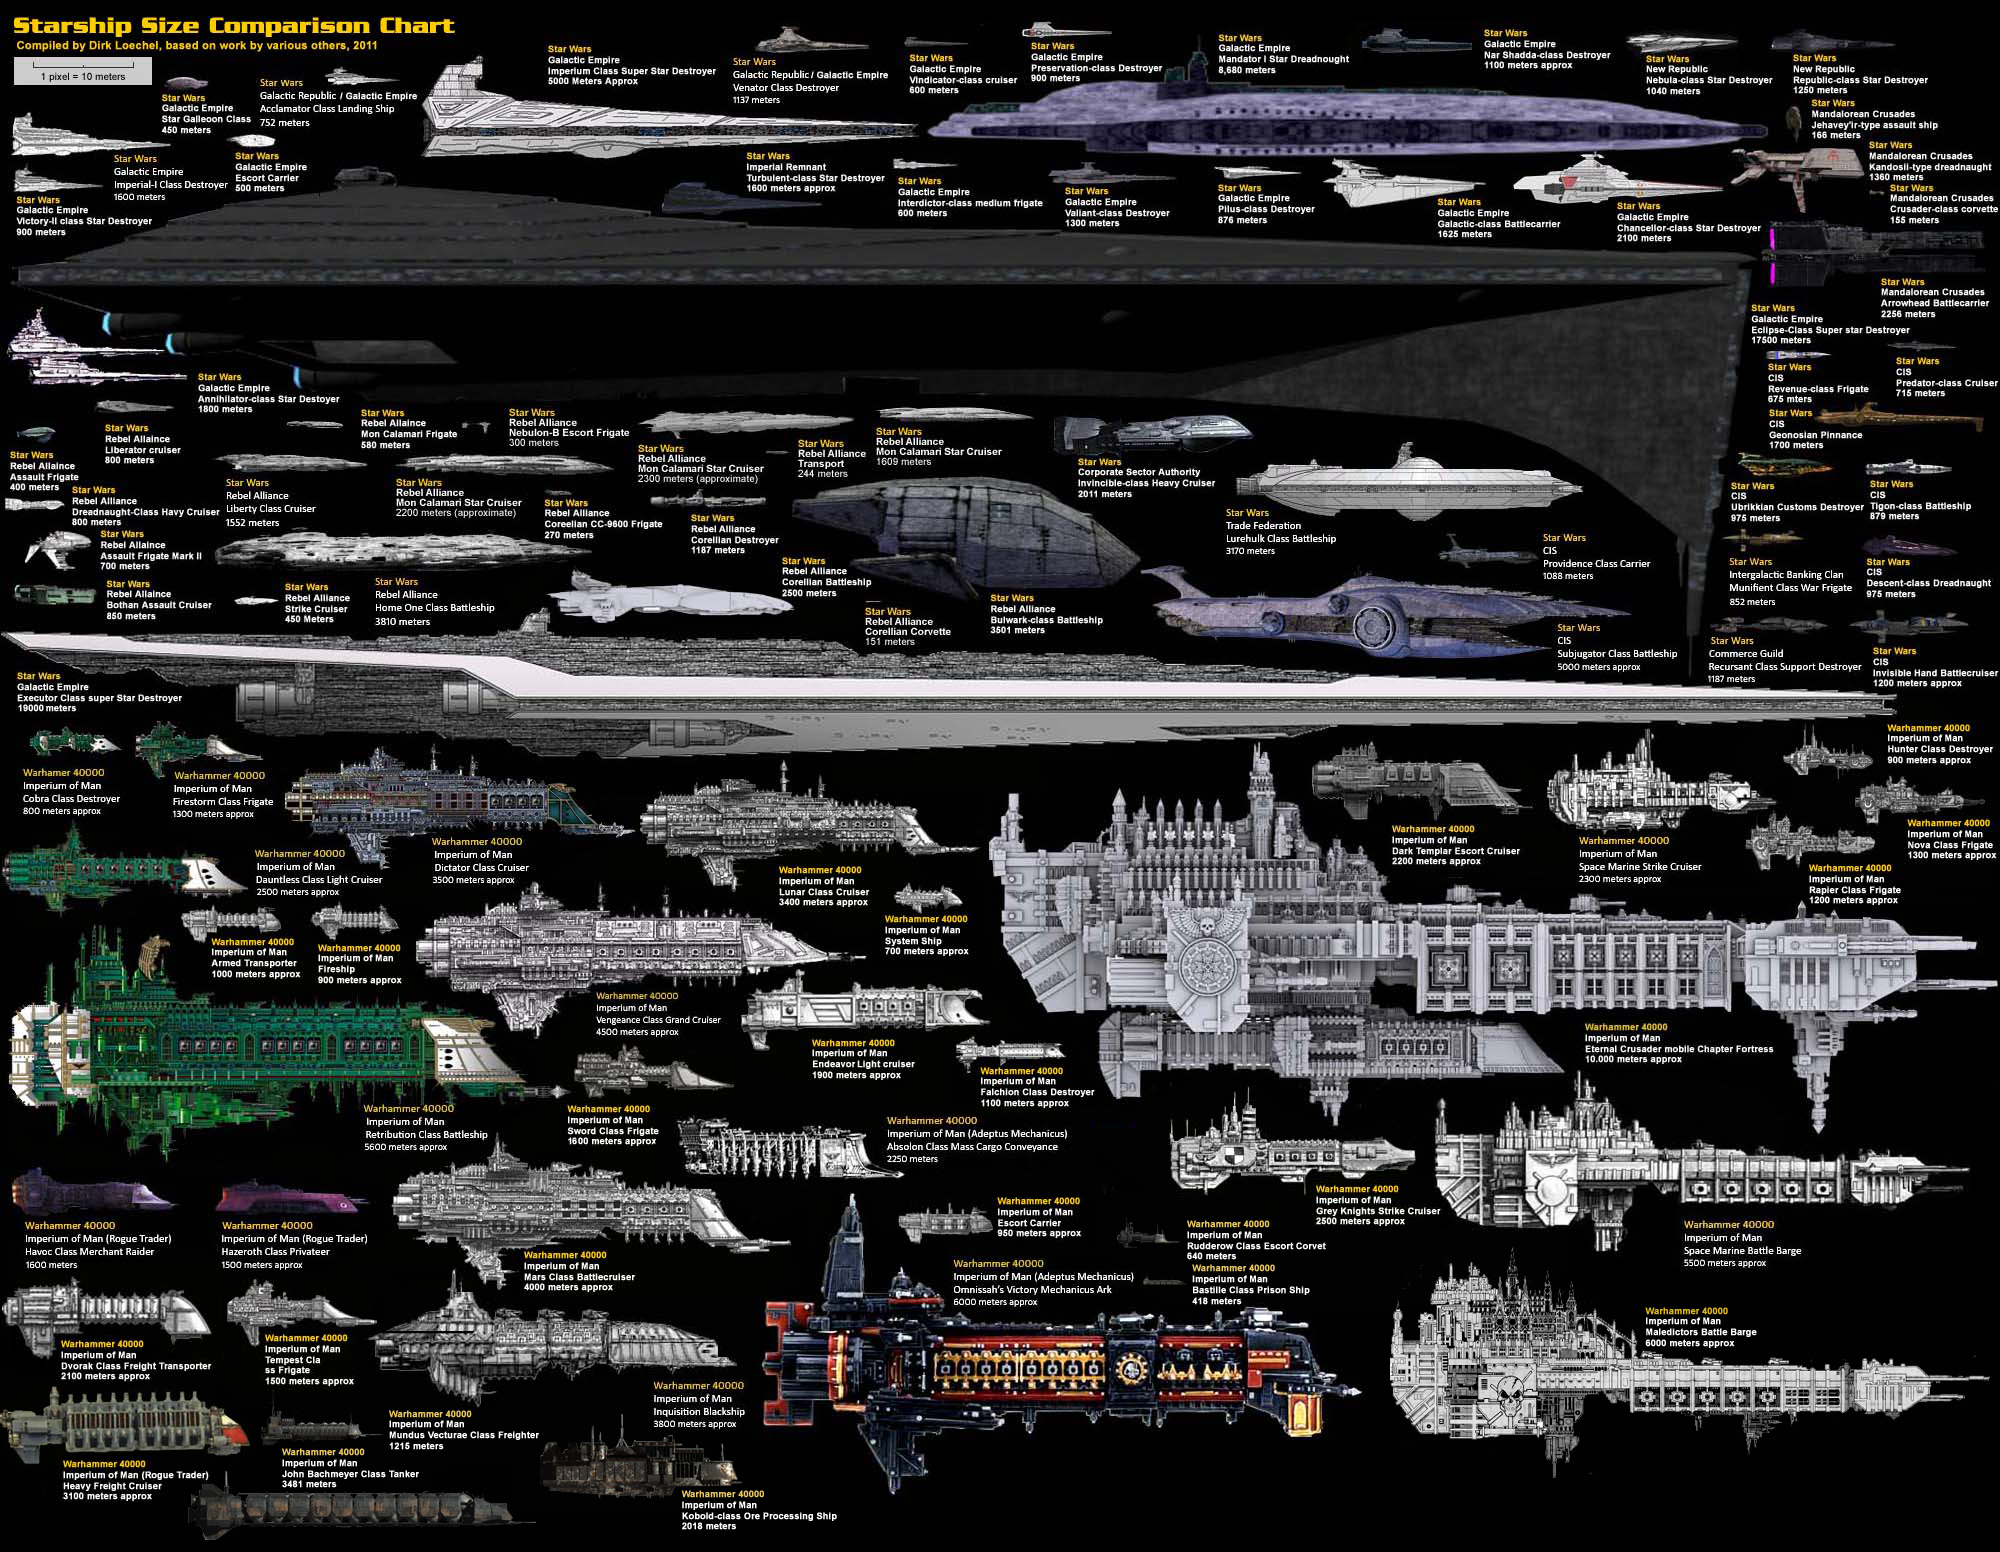 http://fc04.deviantart.net/fs71/f/2011/064/b/3/starwars_and_wh40k_ships_2_by_dirkloechel-d39j5n5.jpg